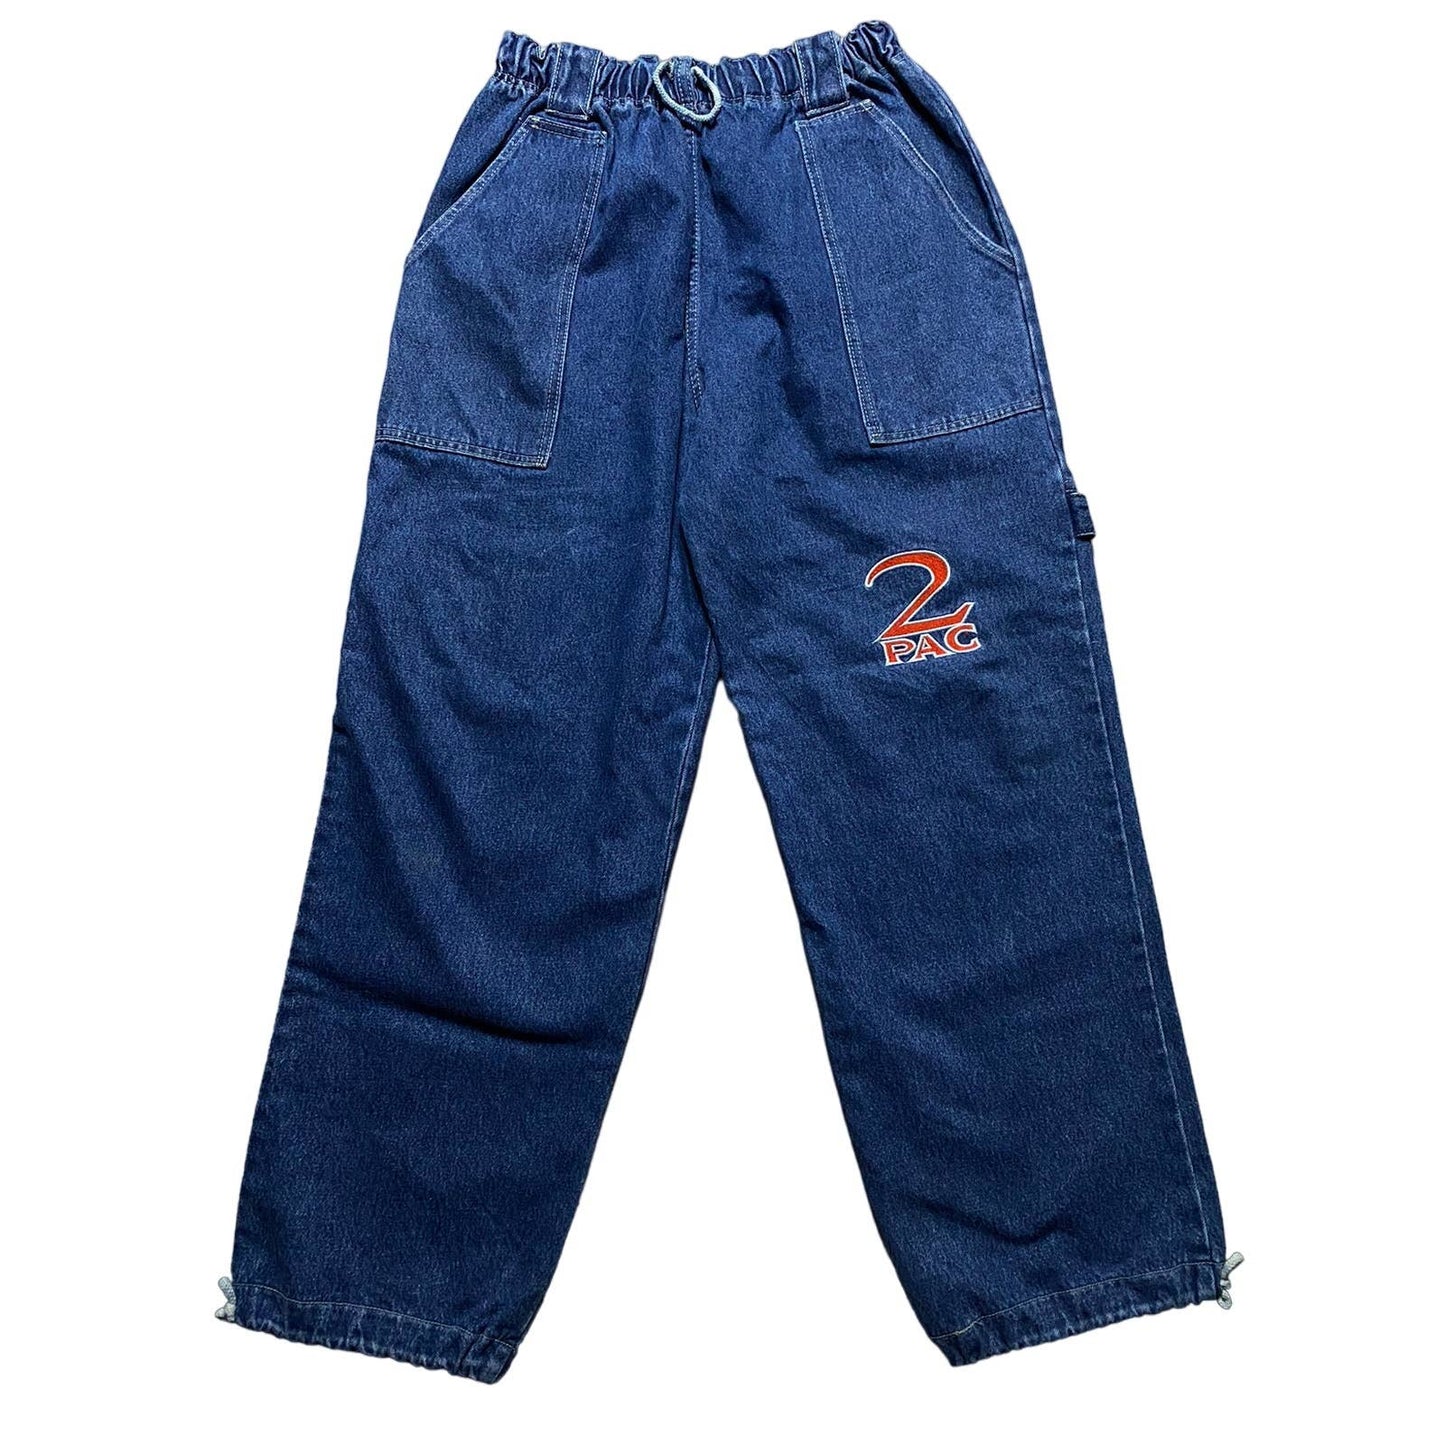 2pac jeans vintage rap denim pants